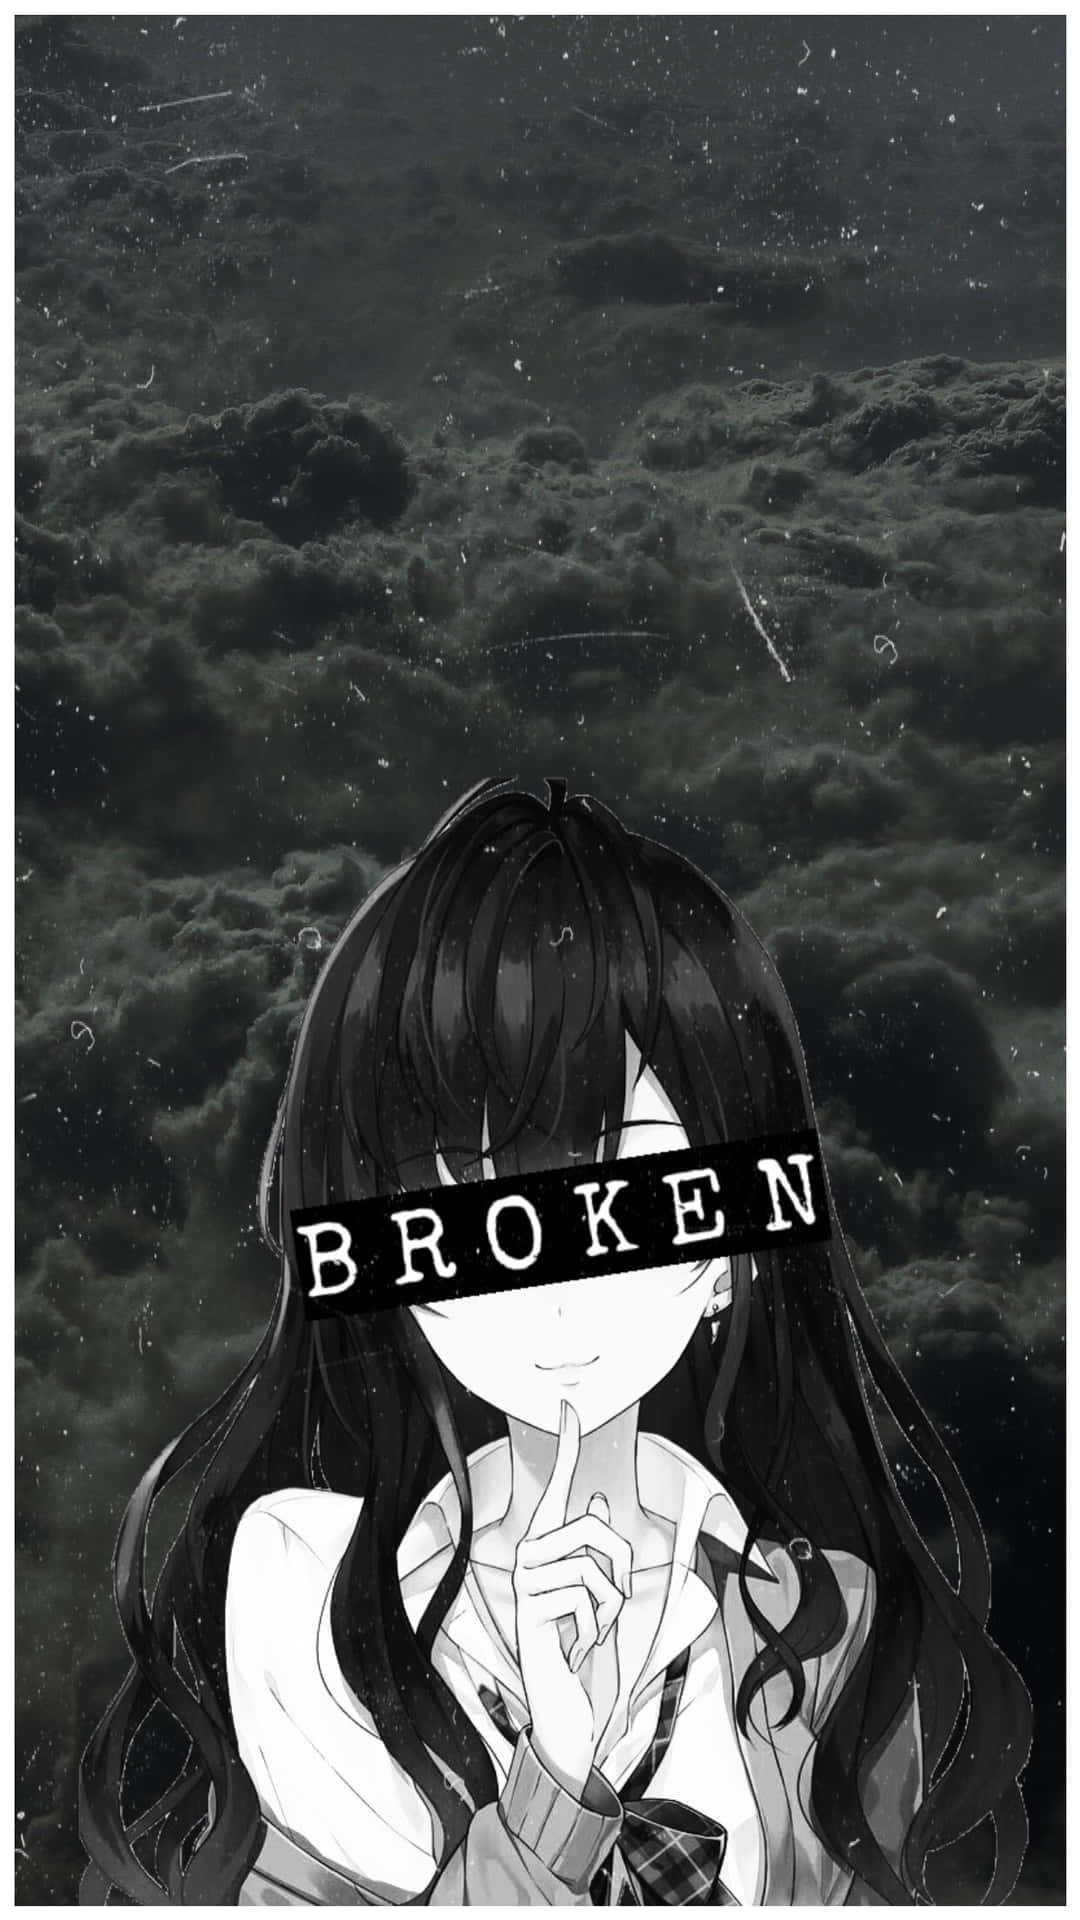 Sad Depressing Aesthetic Broken Anime Girl Wallpaper